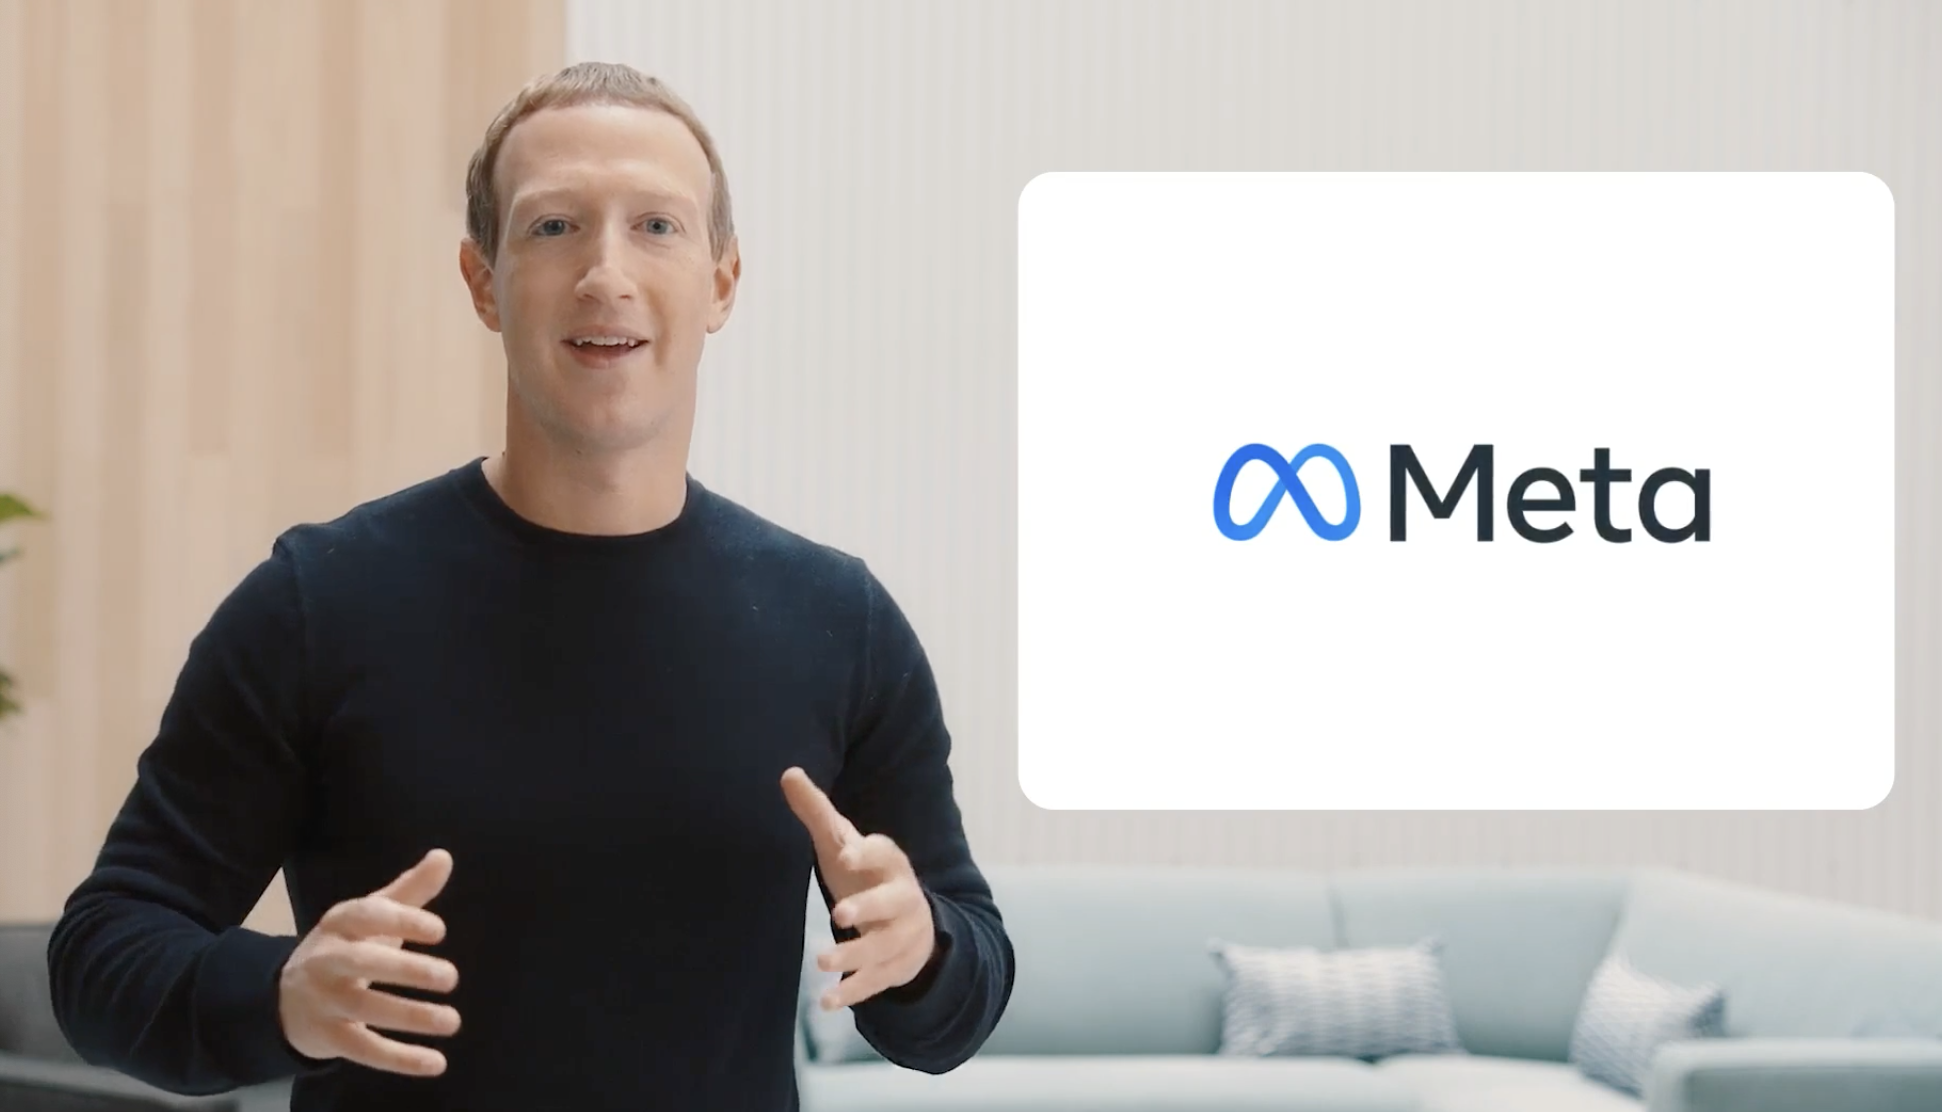 フェイスブックが社名変更し「Meta」に、メタバース構築に決意表明